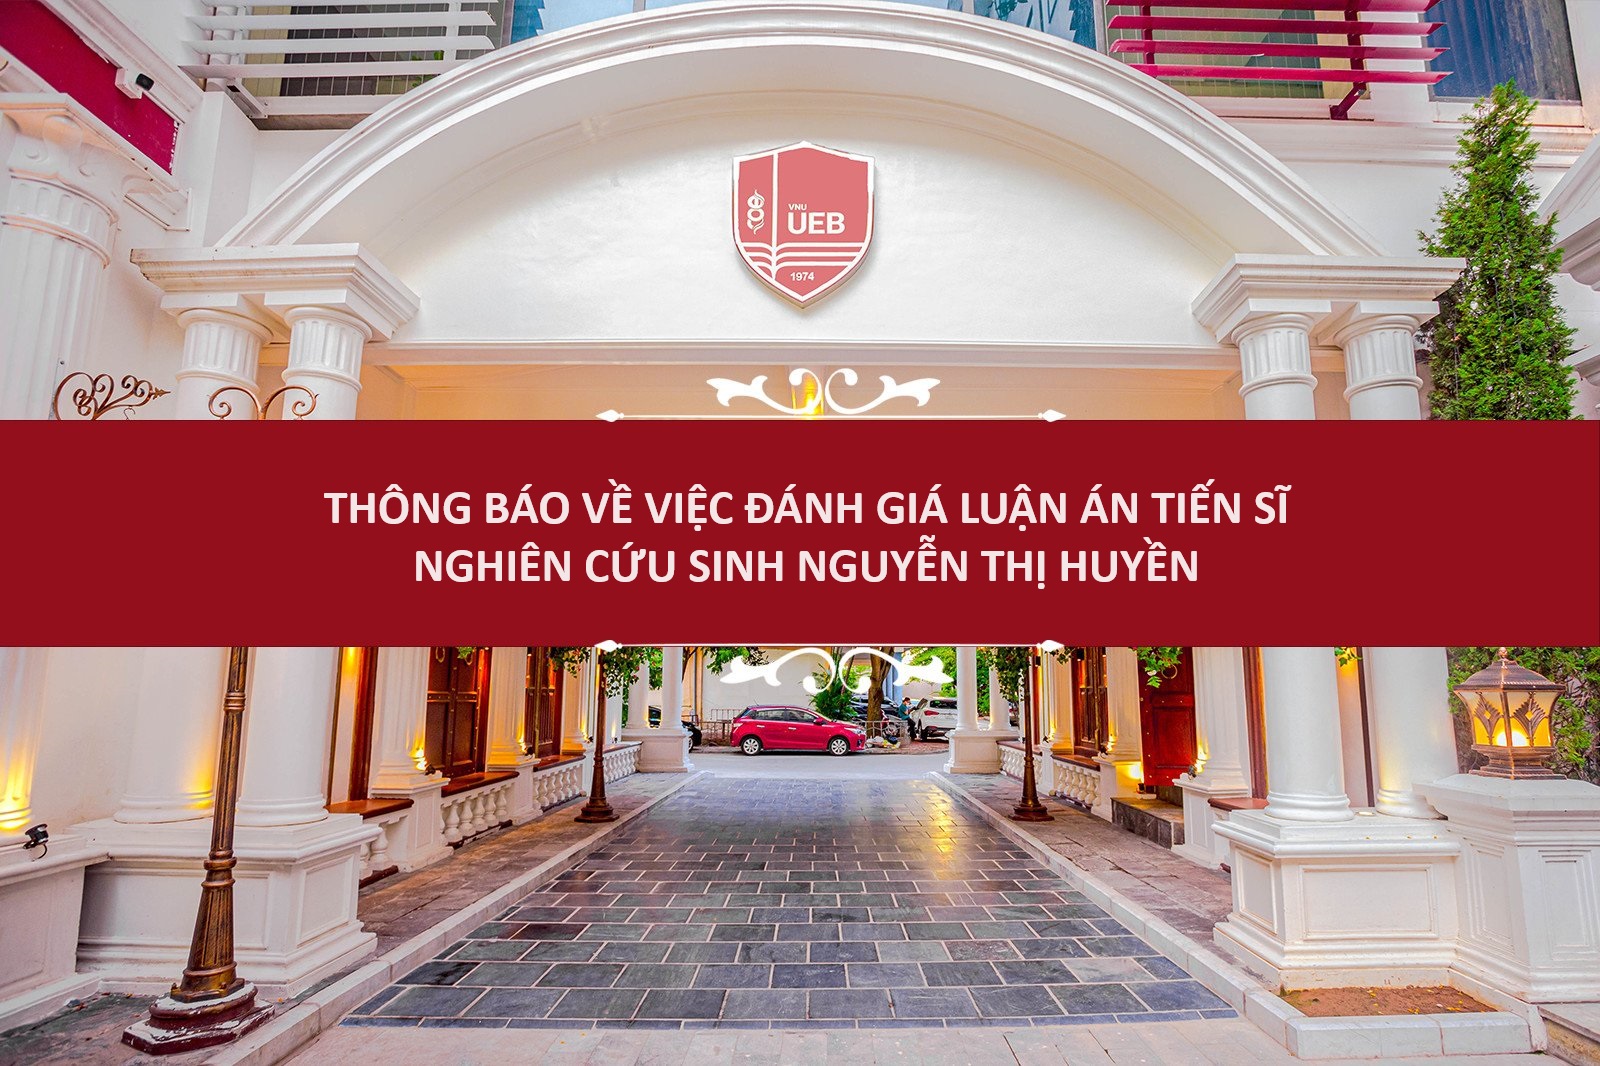 Thông báo về việc đánh giá luận án tiến sĩ nghiên cứu sinh Nguyễn Thị Huyền